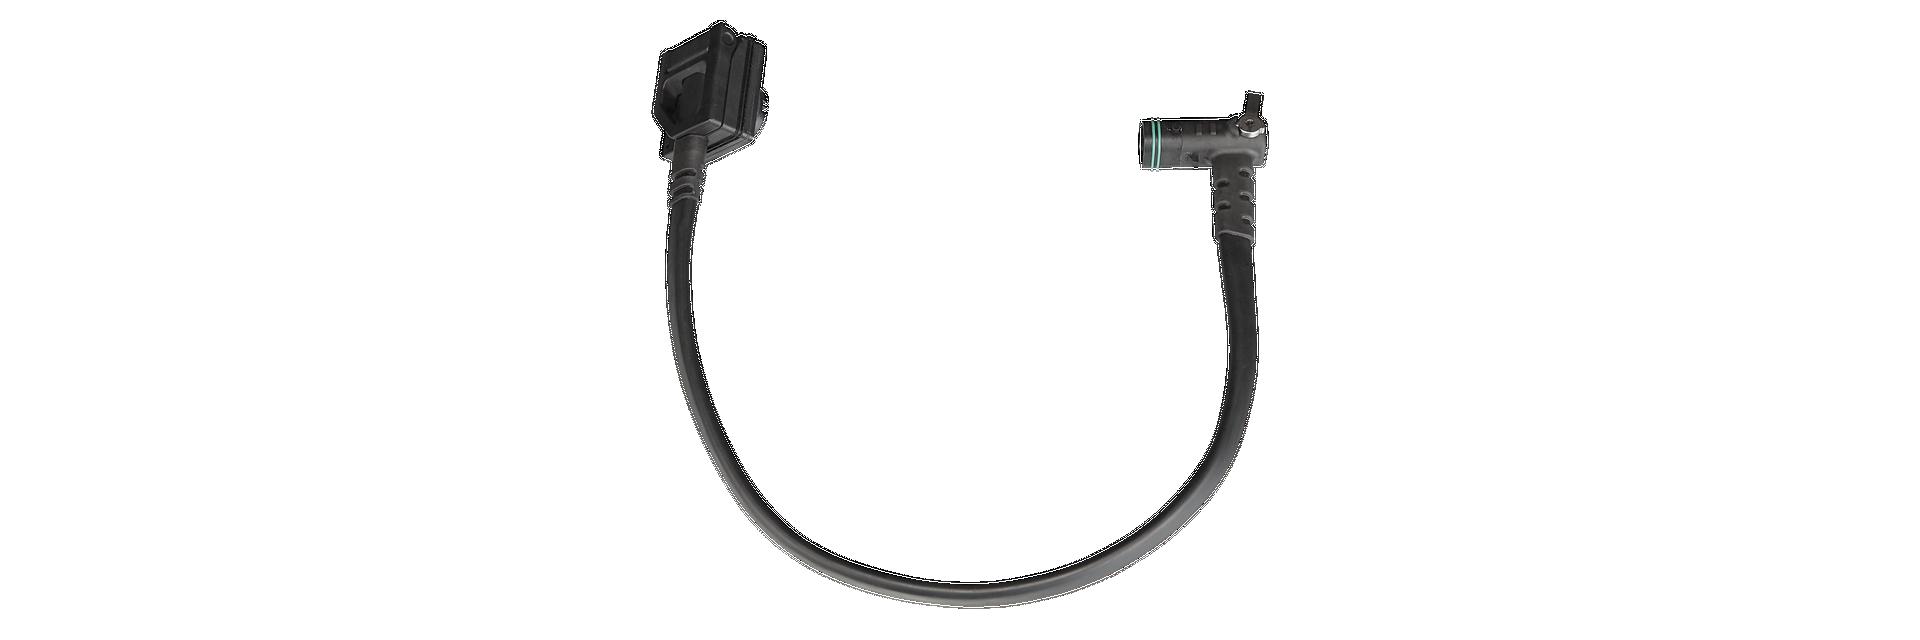 Specialized Levo FSR G3 Main Wiring Harness